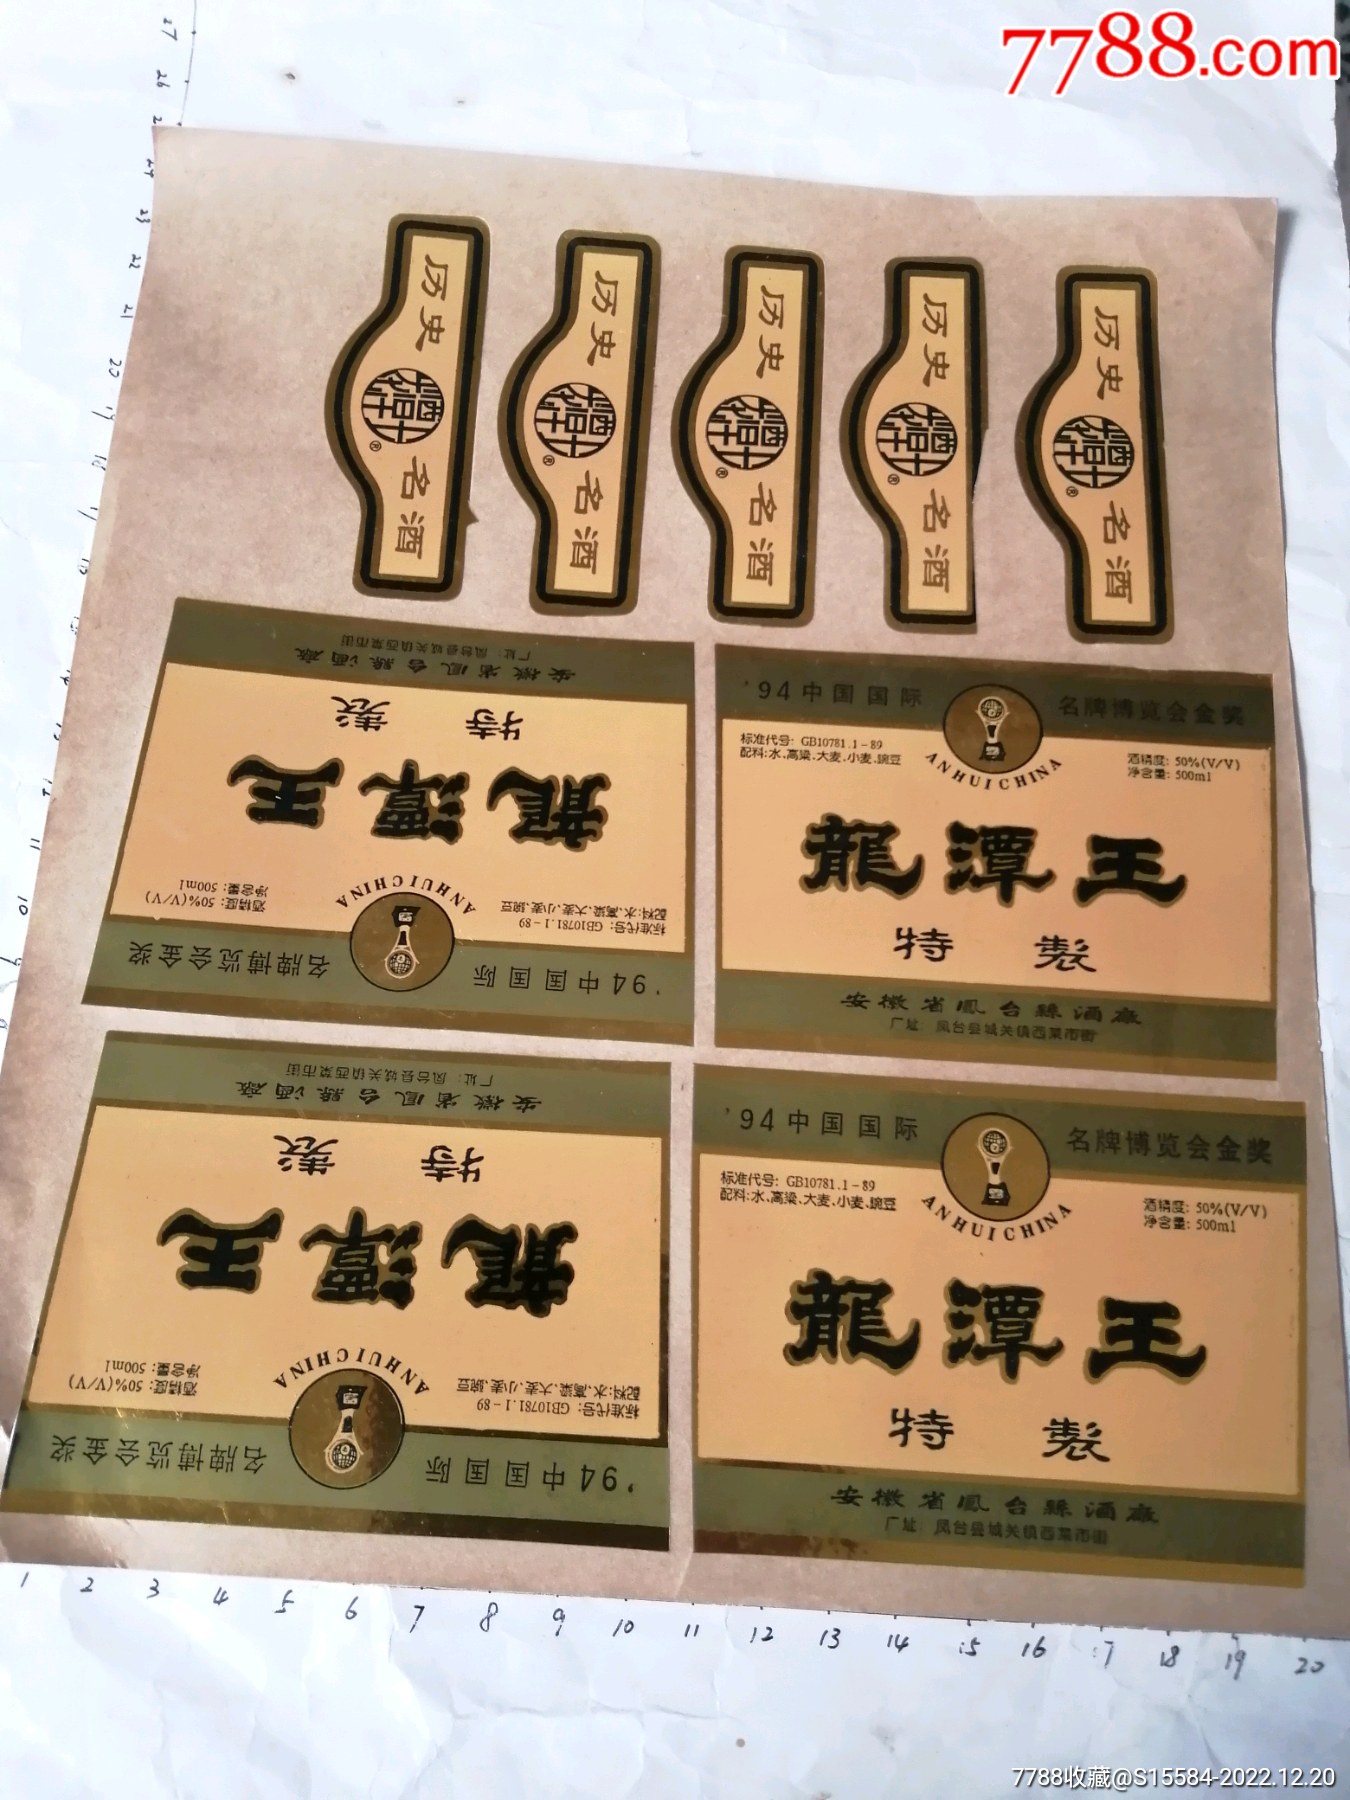 2000年代安徽龙潭王酒-价格:1288元-se79554728-老酒收藏-零售-7788普洱